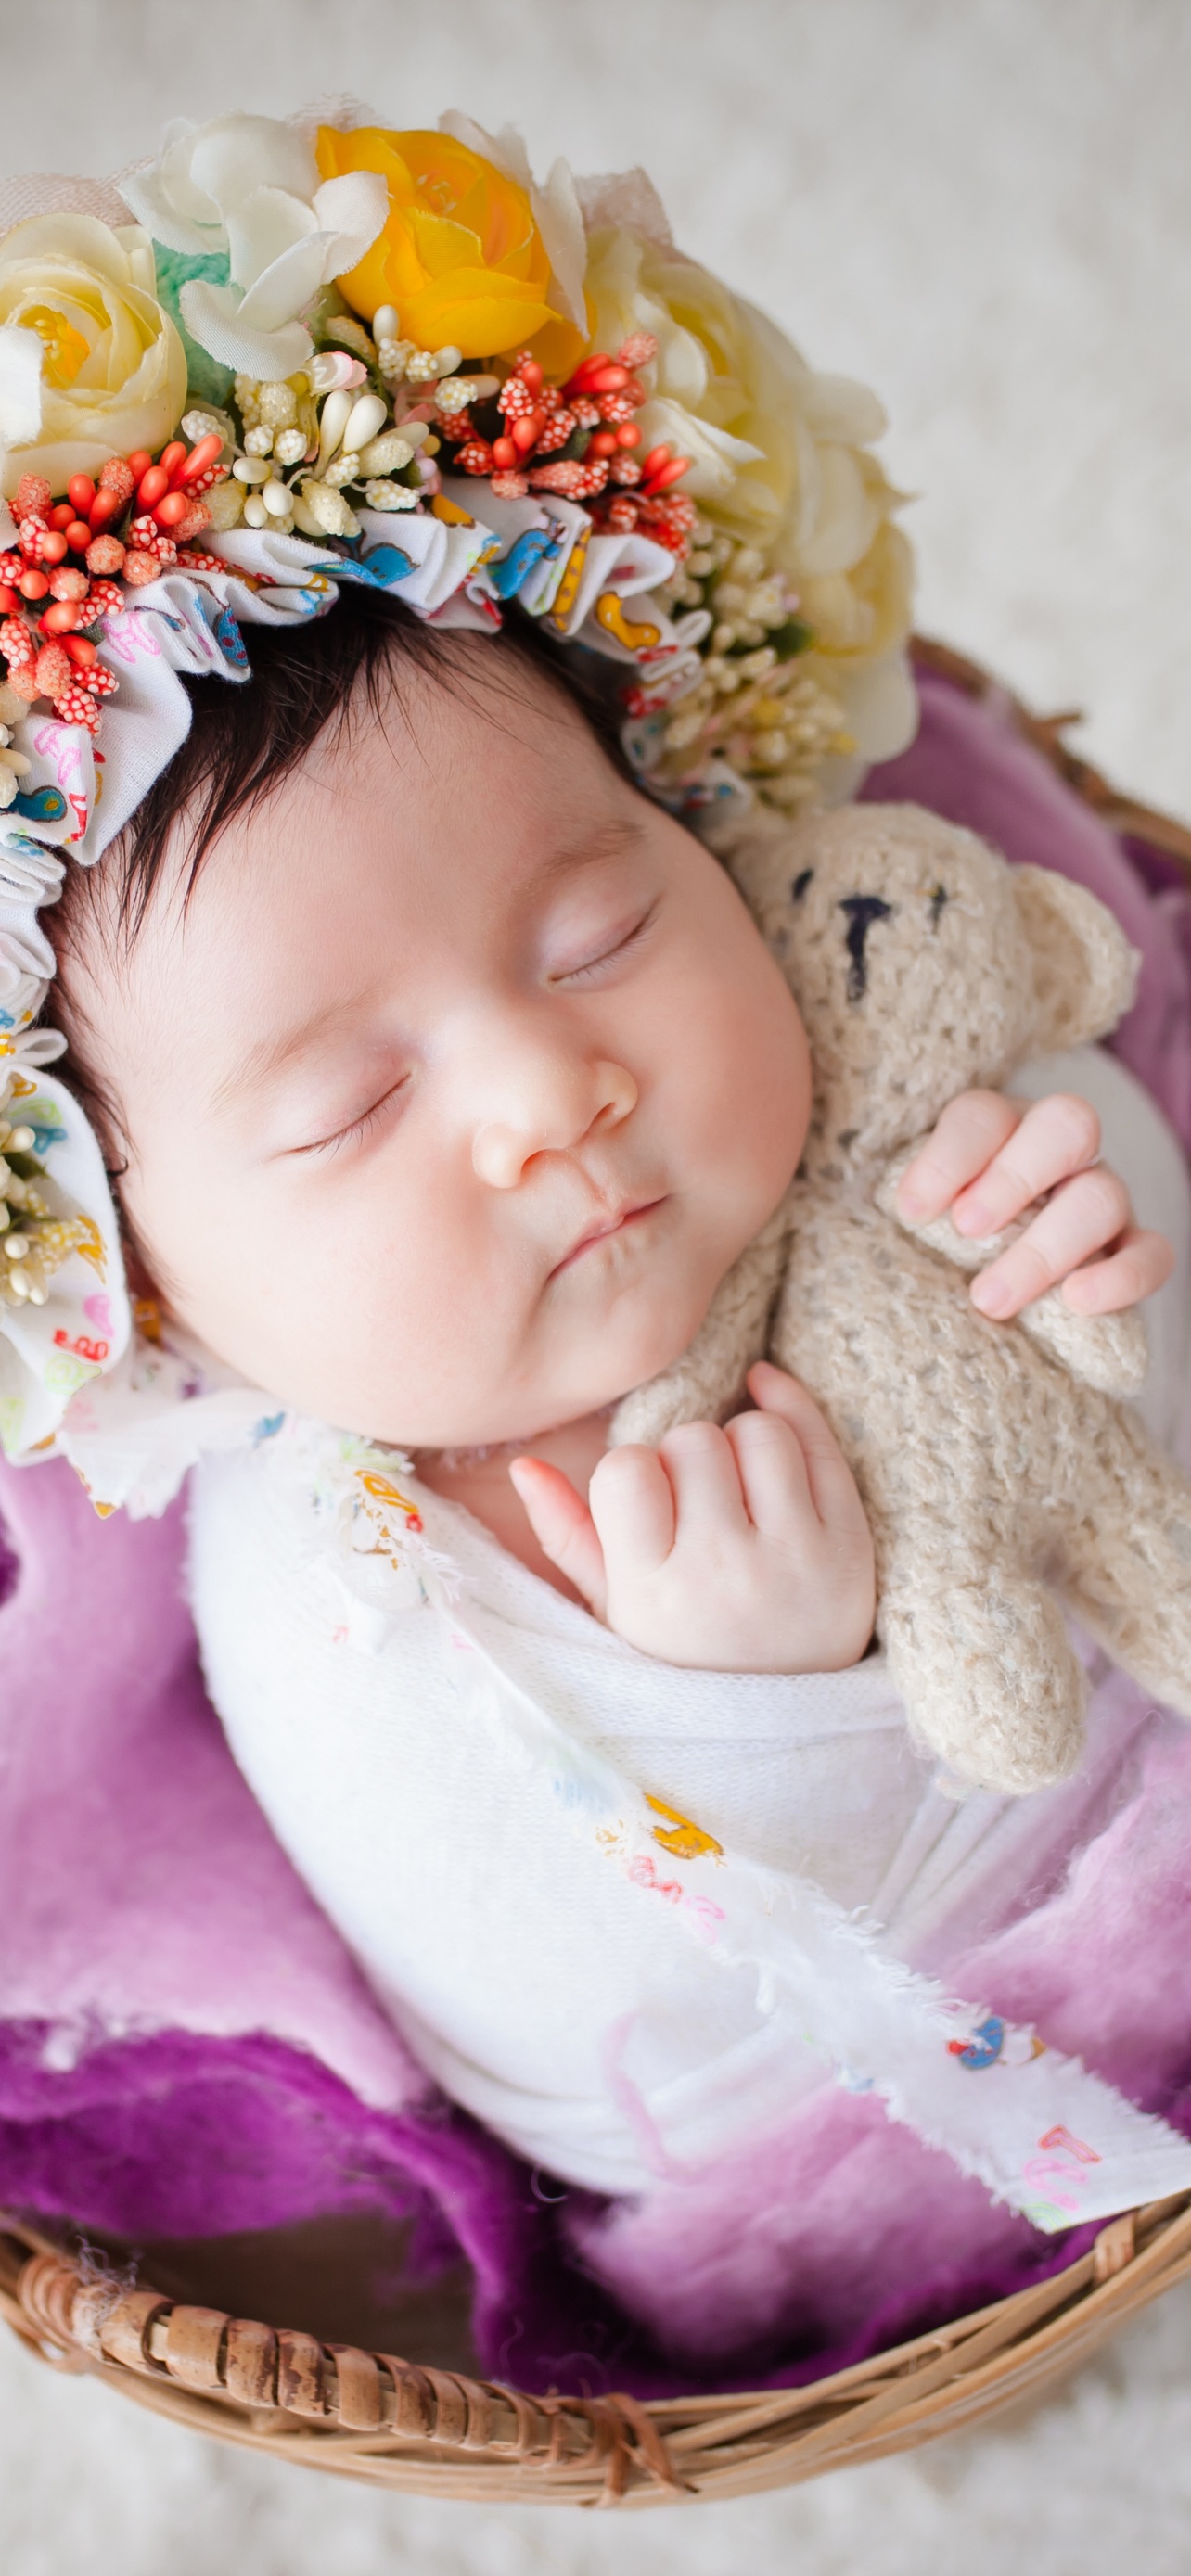 Newborn 4K Wallpaper, Flower Wreath, Sleeping baby, White fur, Basket